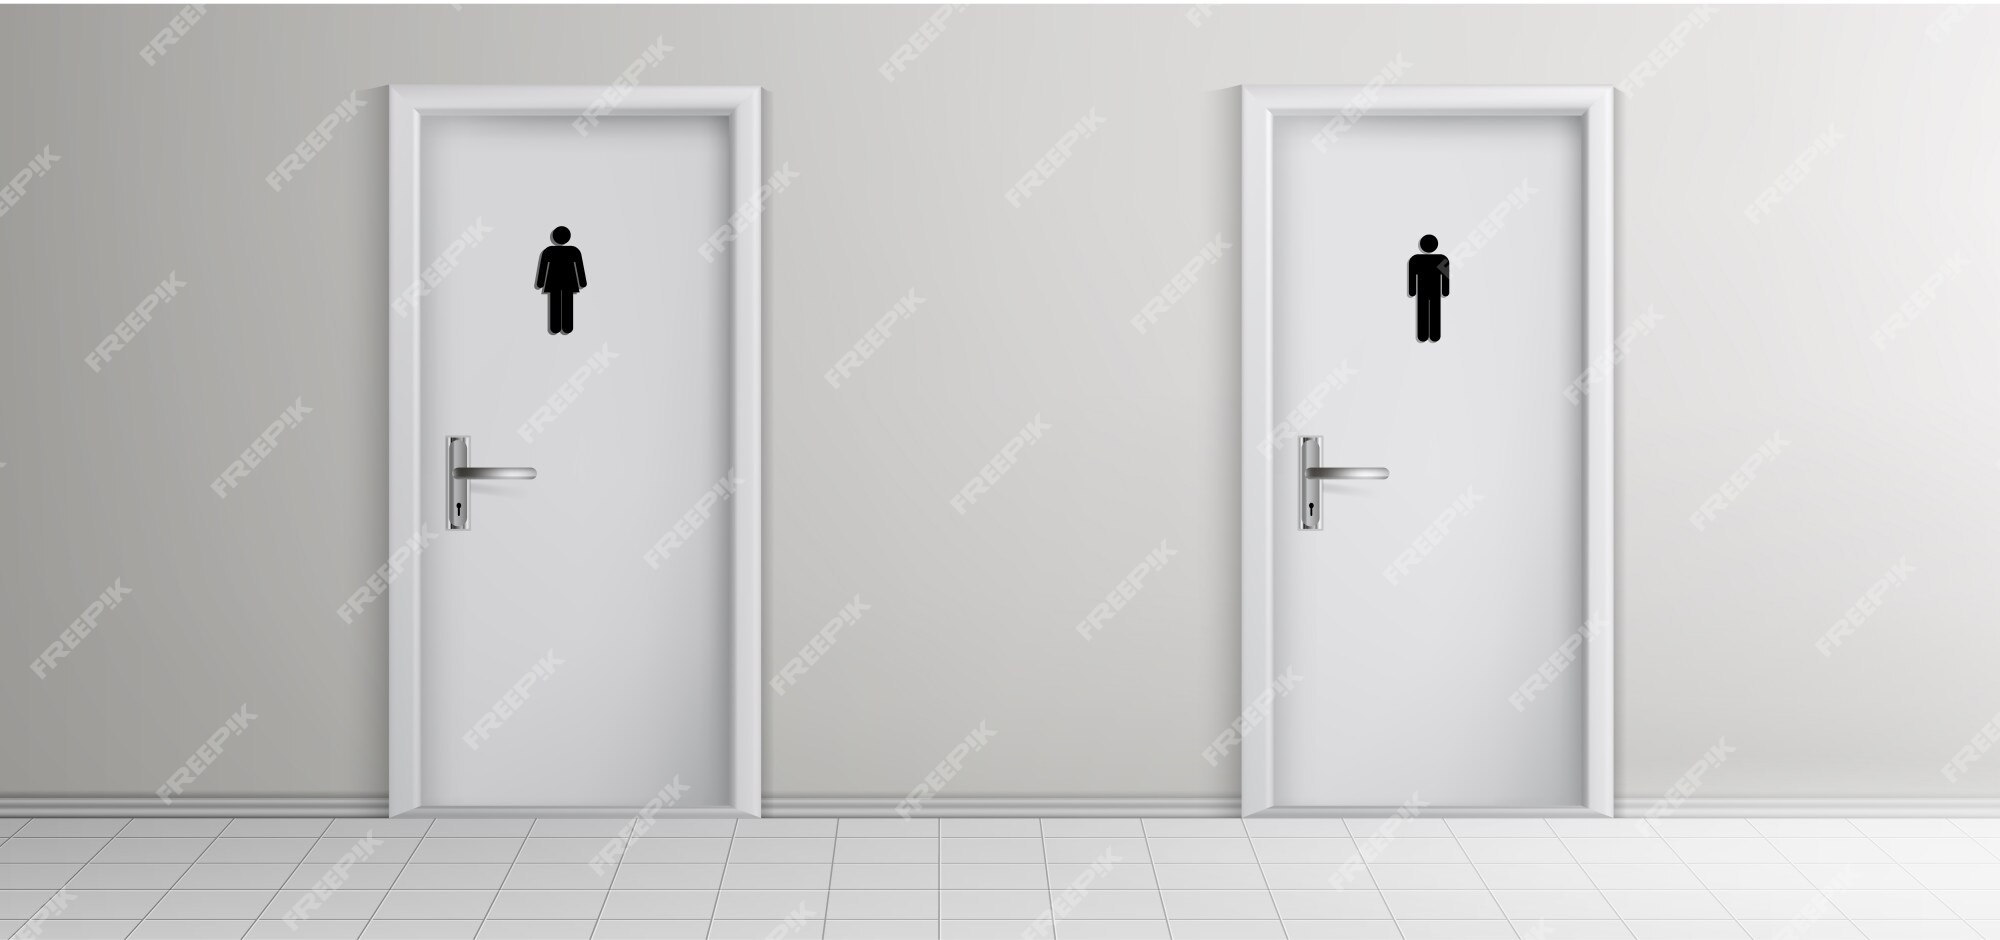 Toilet Door Images - Free Download on Freepik